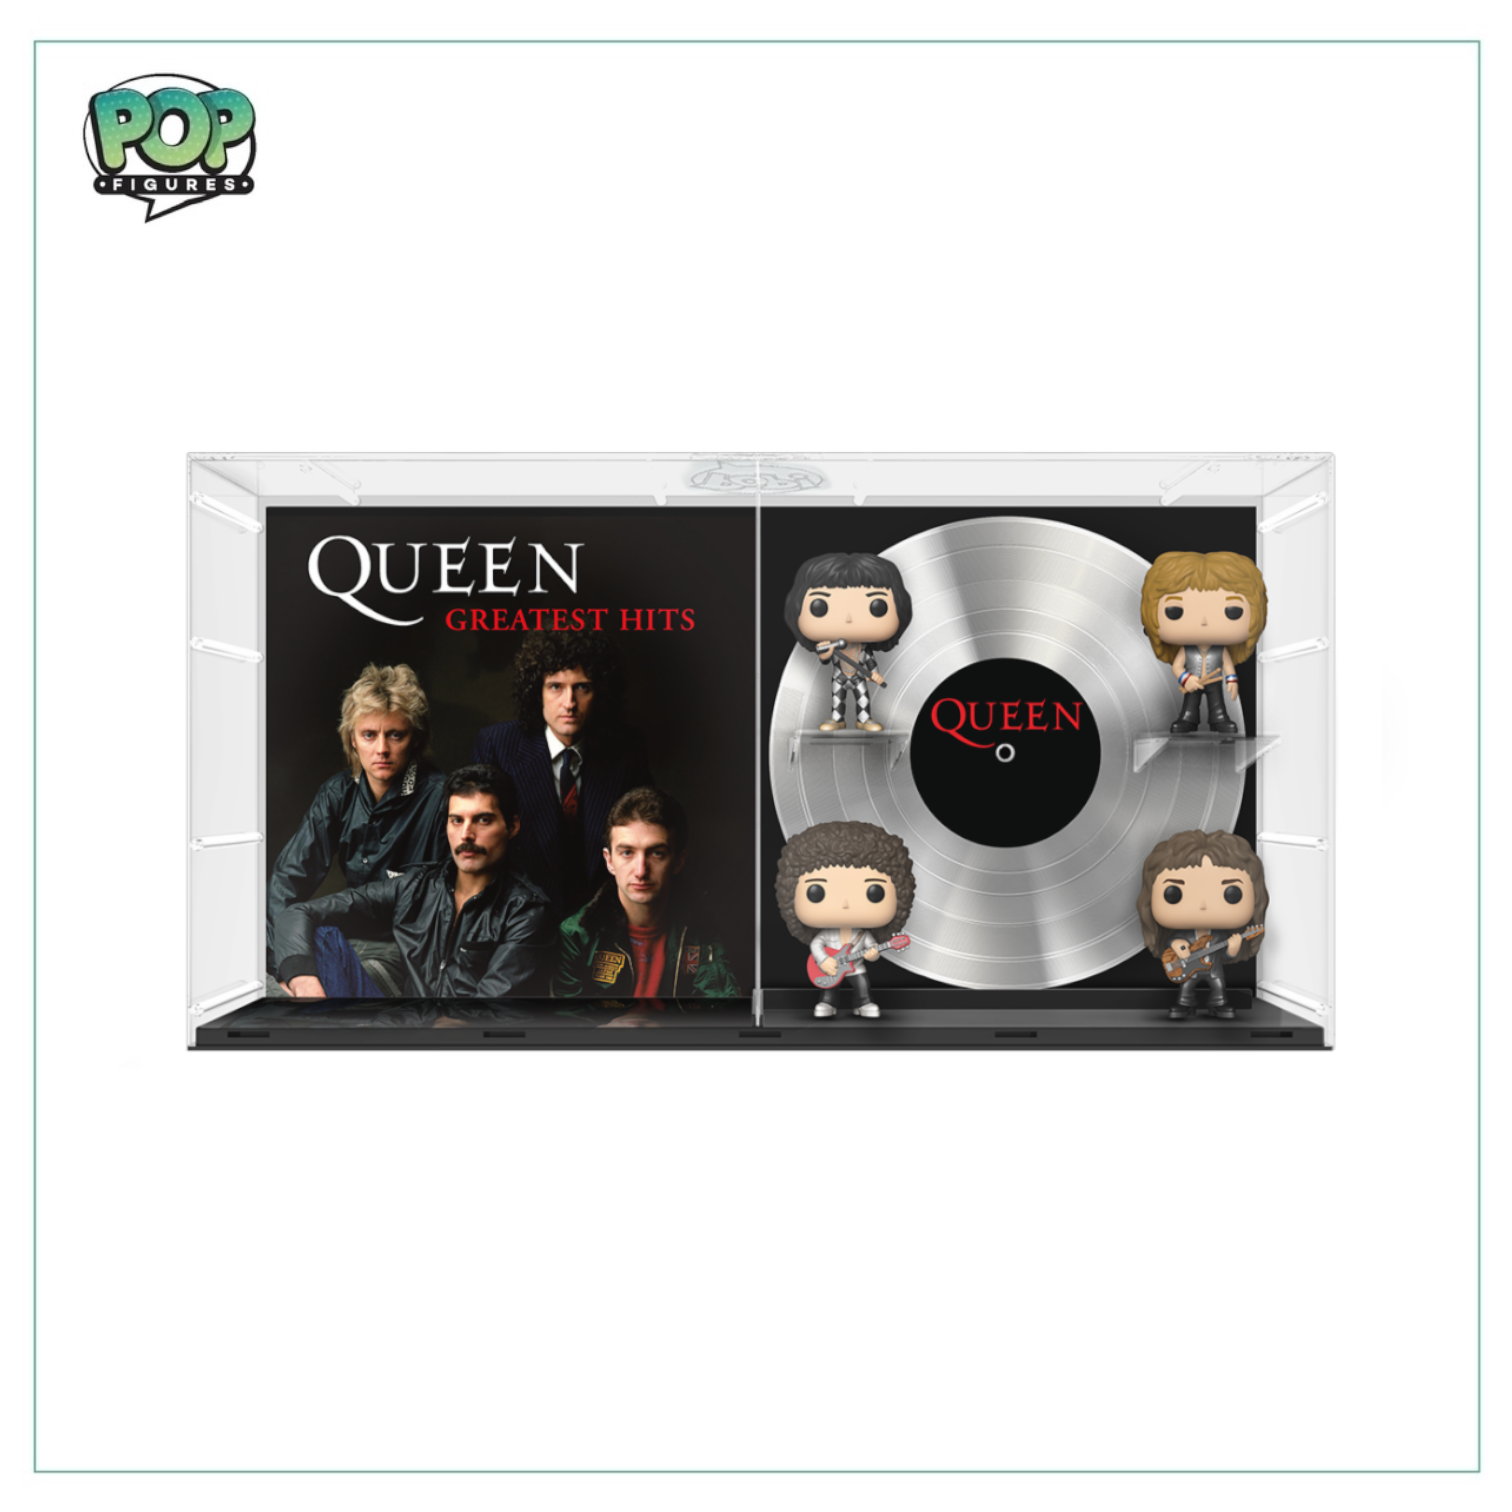 Queen: Greatest Hits #21 Deluxe Funko Album! - Queen - Special Edition